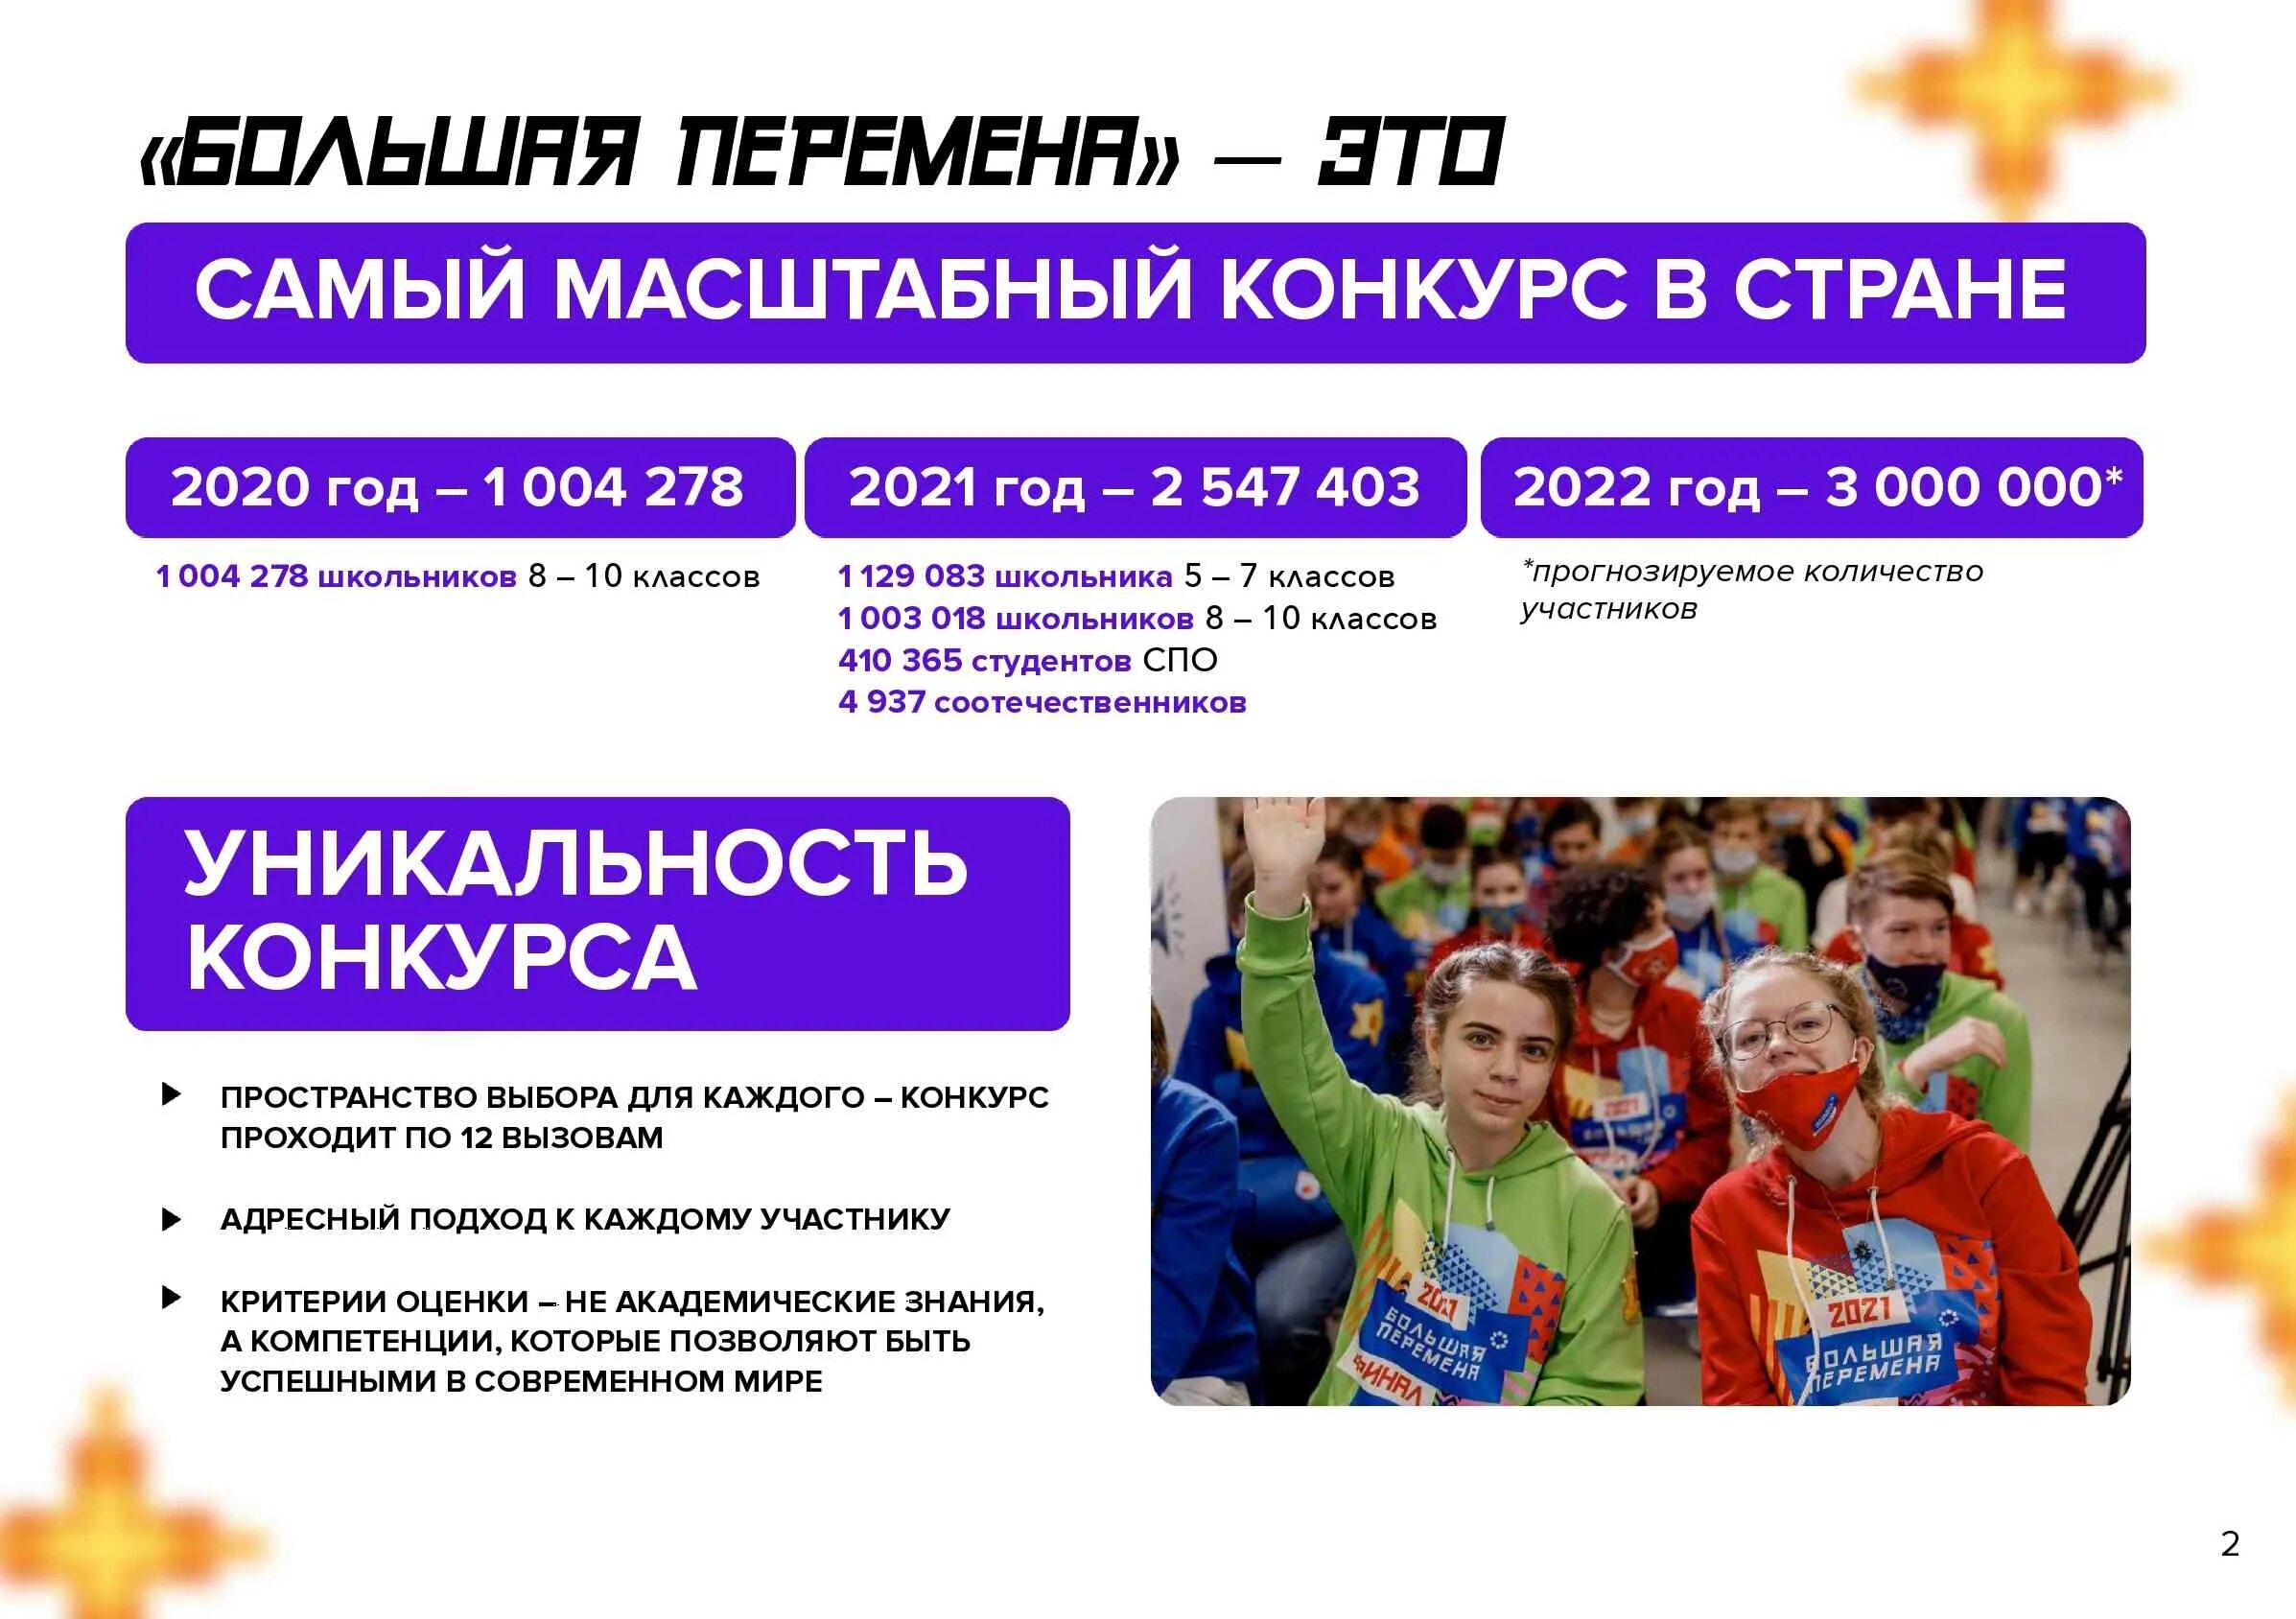 Всероссийский конкурс большая перемена 2022. Большая перемена конкурс для школьников 2022. Проект большая перемена 2022. Проект большая перемена для школьников что это такое.